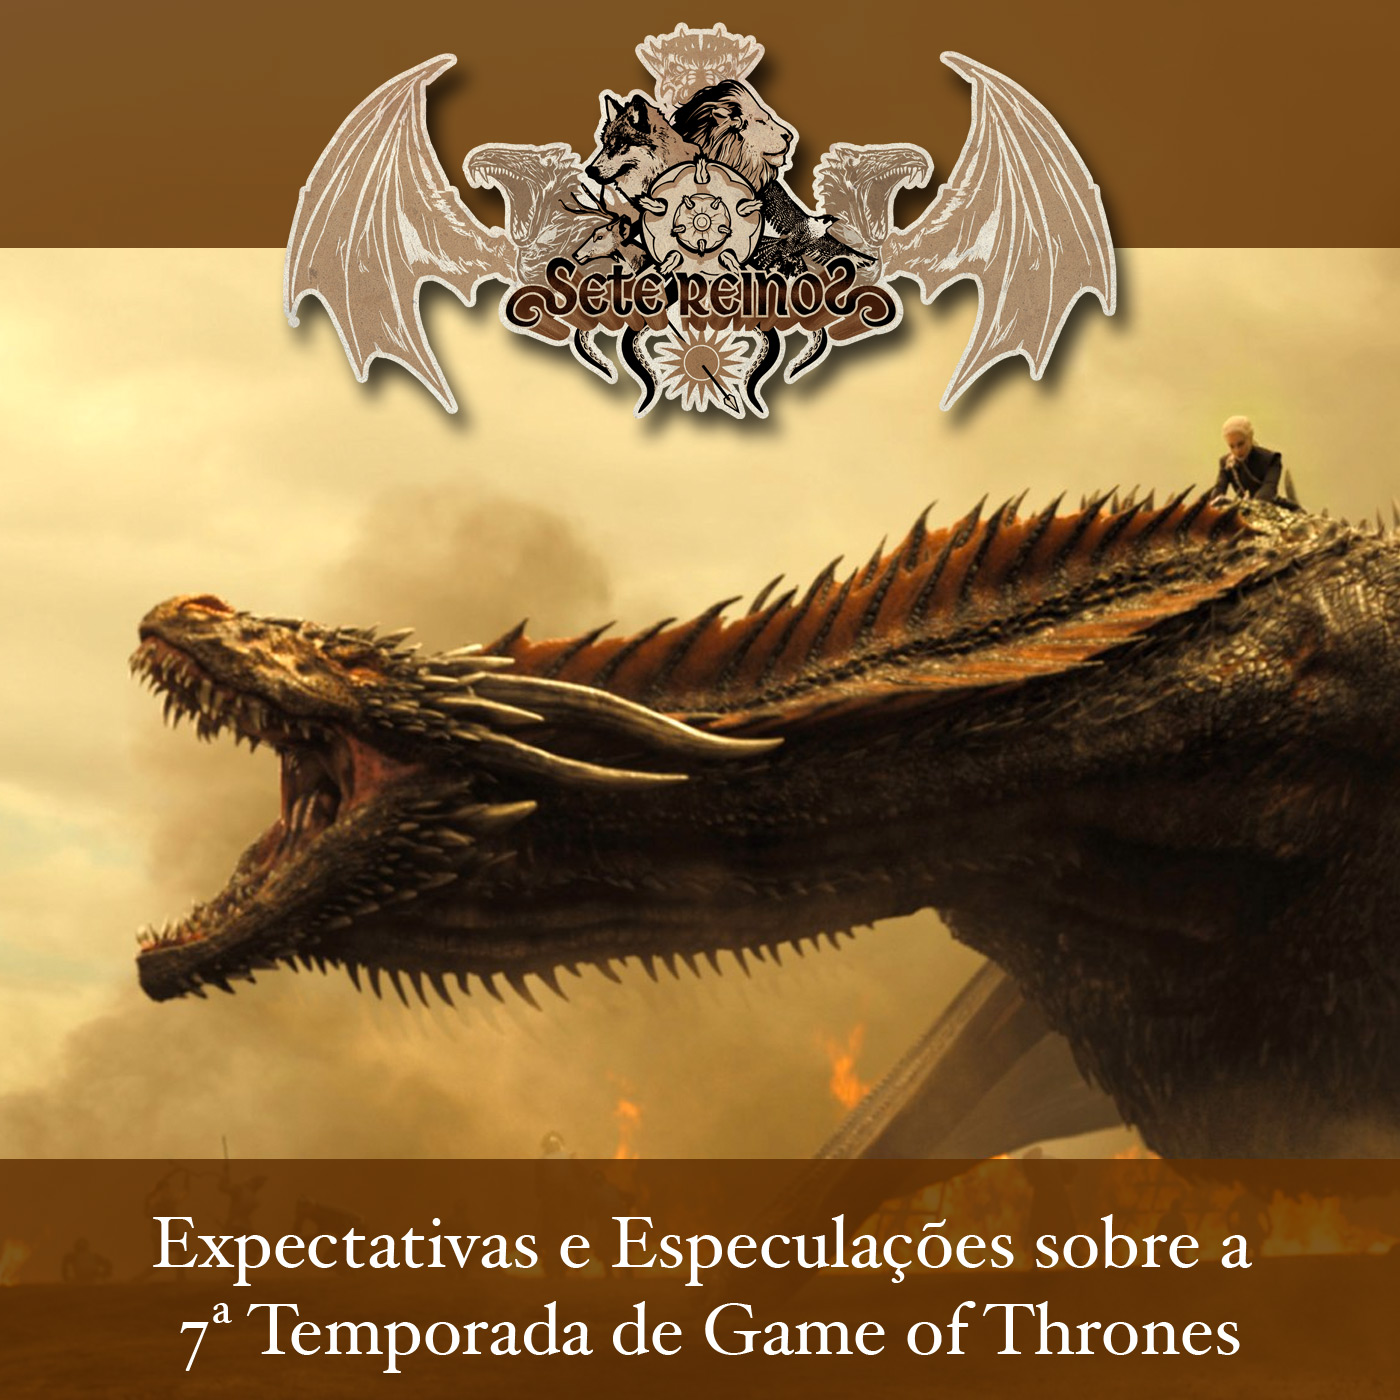 Expectativas e especulações sobre a 7° Temporada de Game of Thrones | Sete Reinos 33